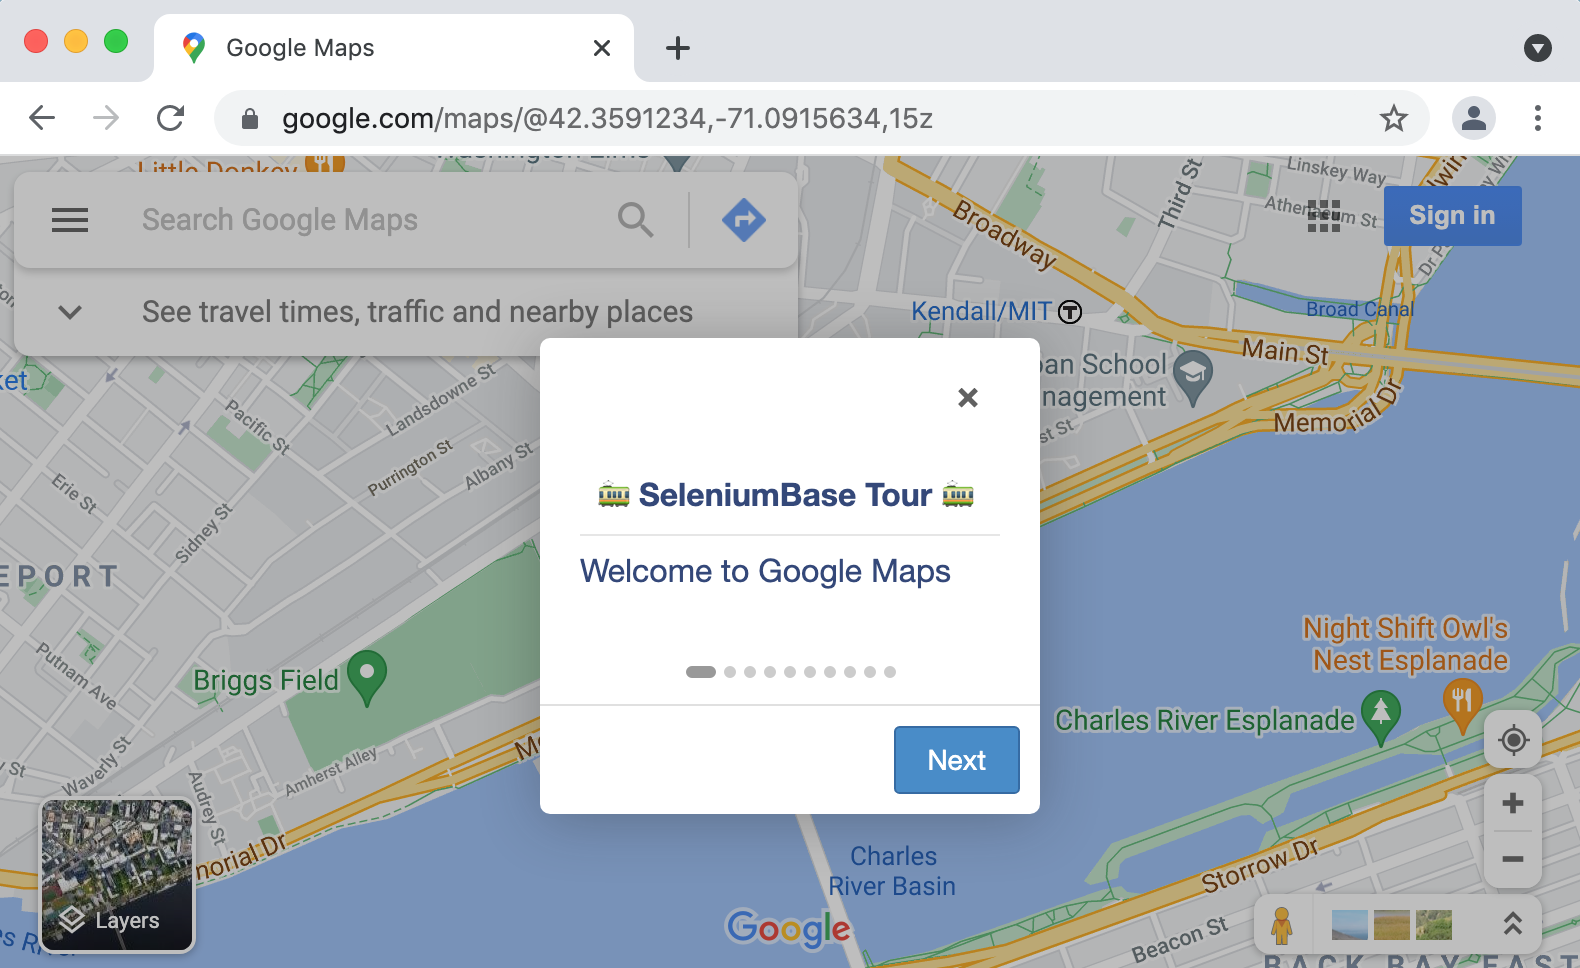 SeleniumBase Tour